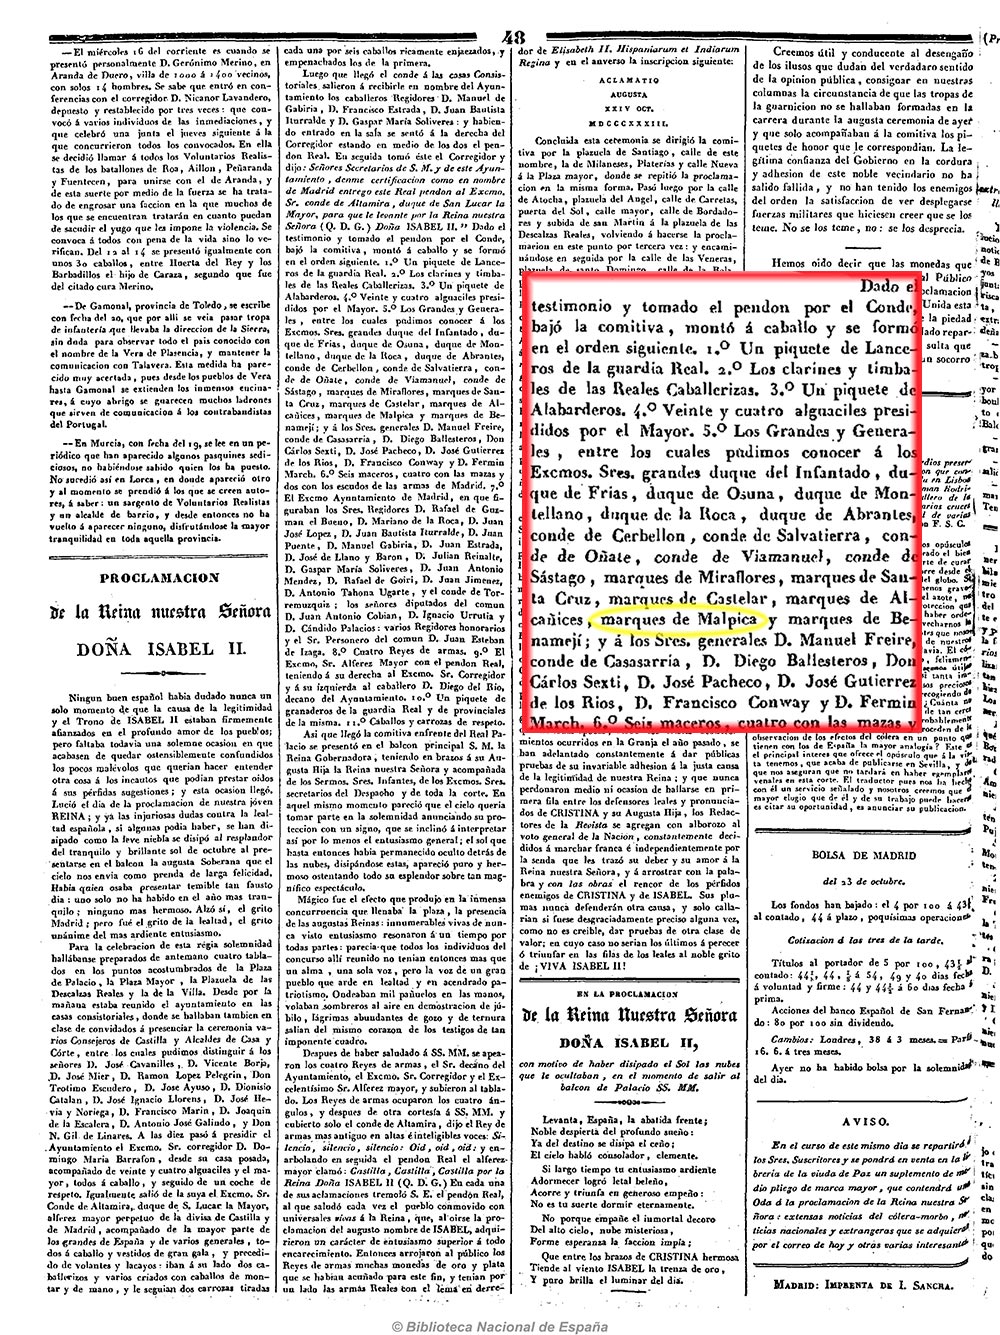 La Revista española 25/10/1833, página 4. Presencia del marqués de Malpica en la cabalgata del desfile de proclamación de la reina Isabel II